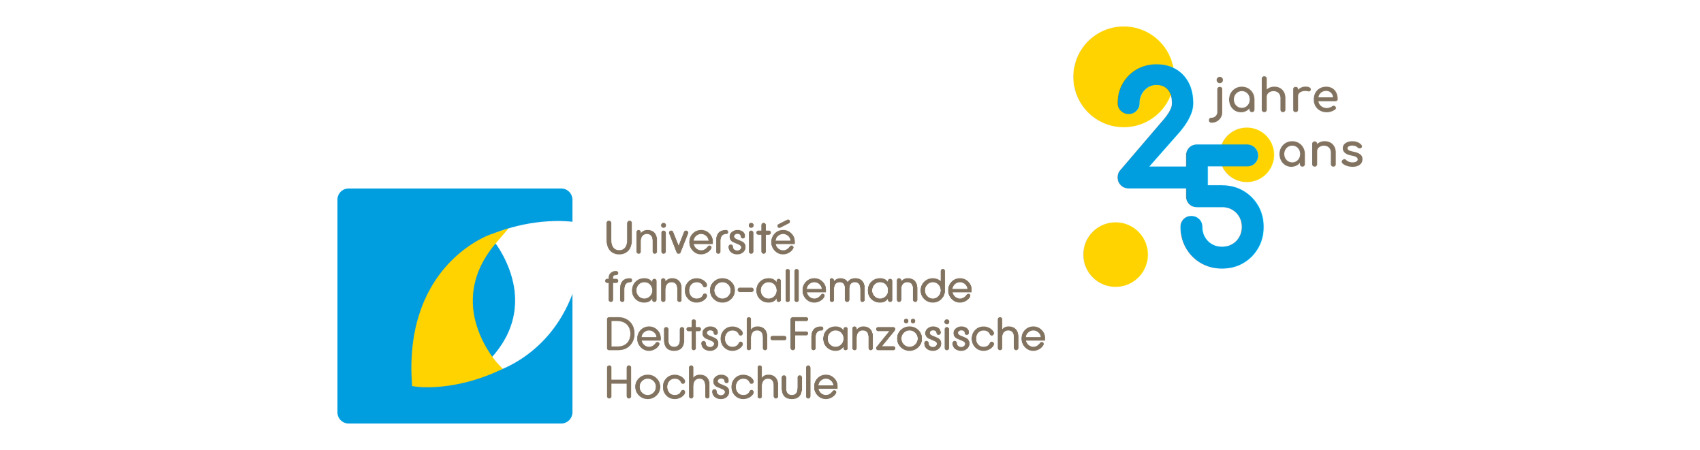 Deutsch-Französische Hochschule / Université franco-allemande (DFH-UFA)